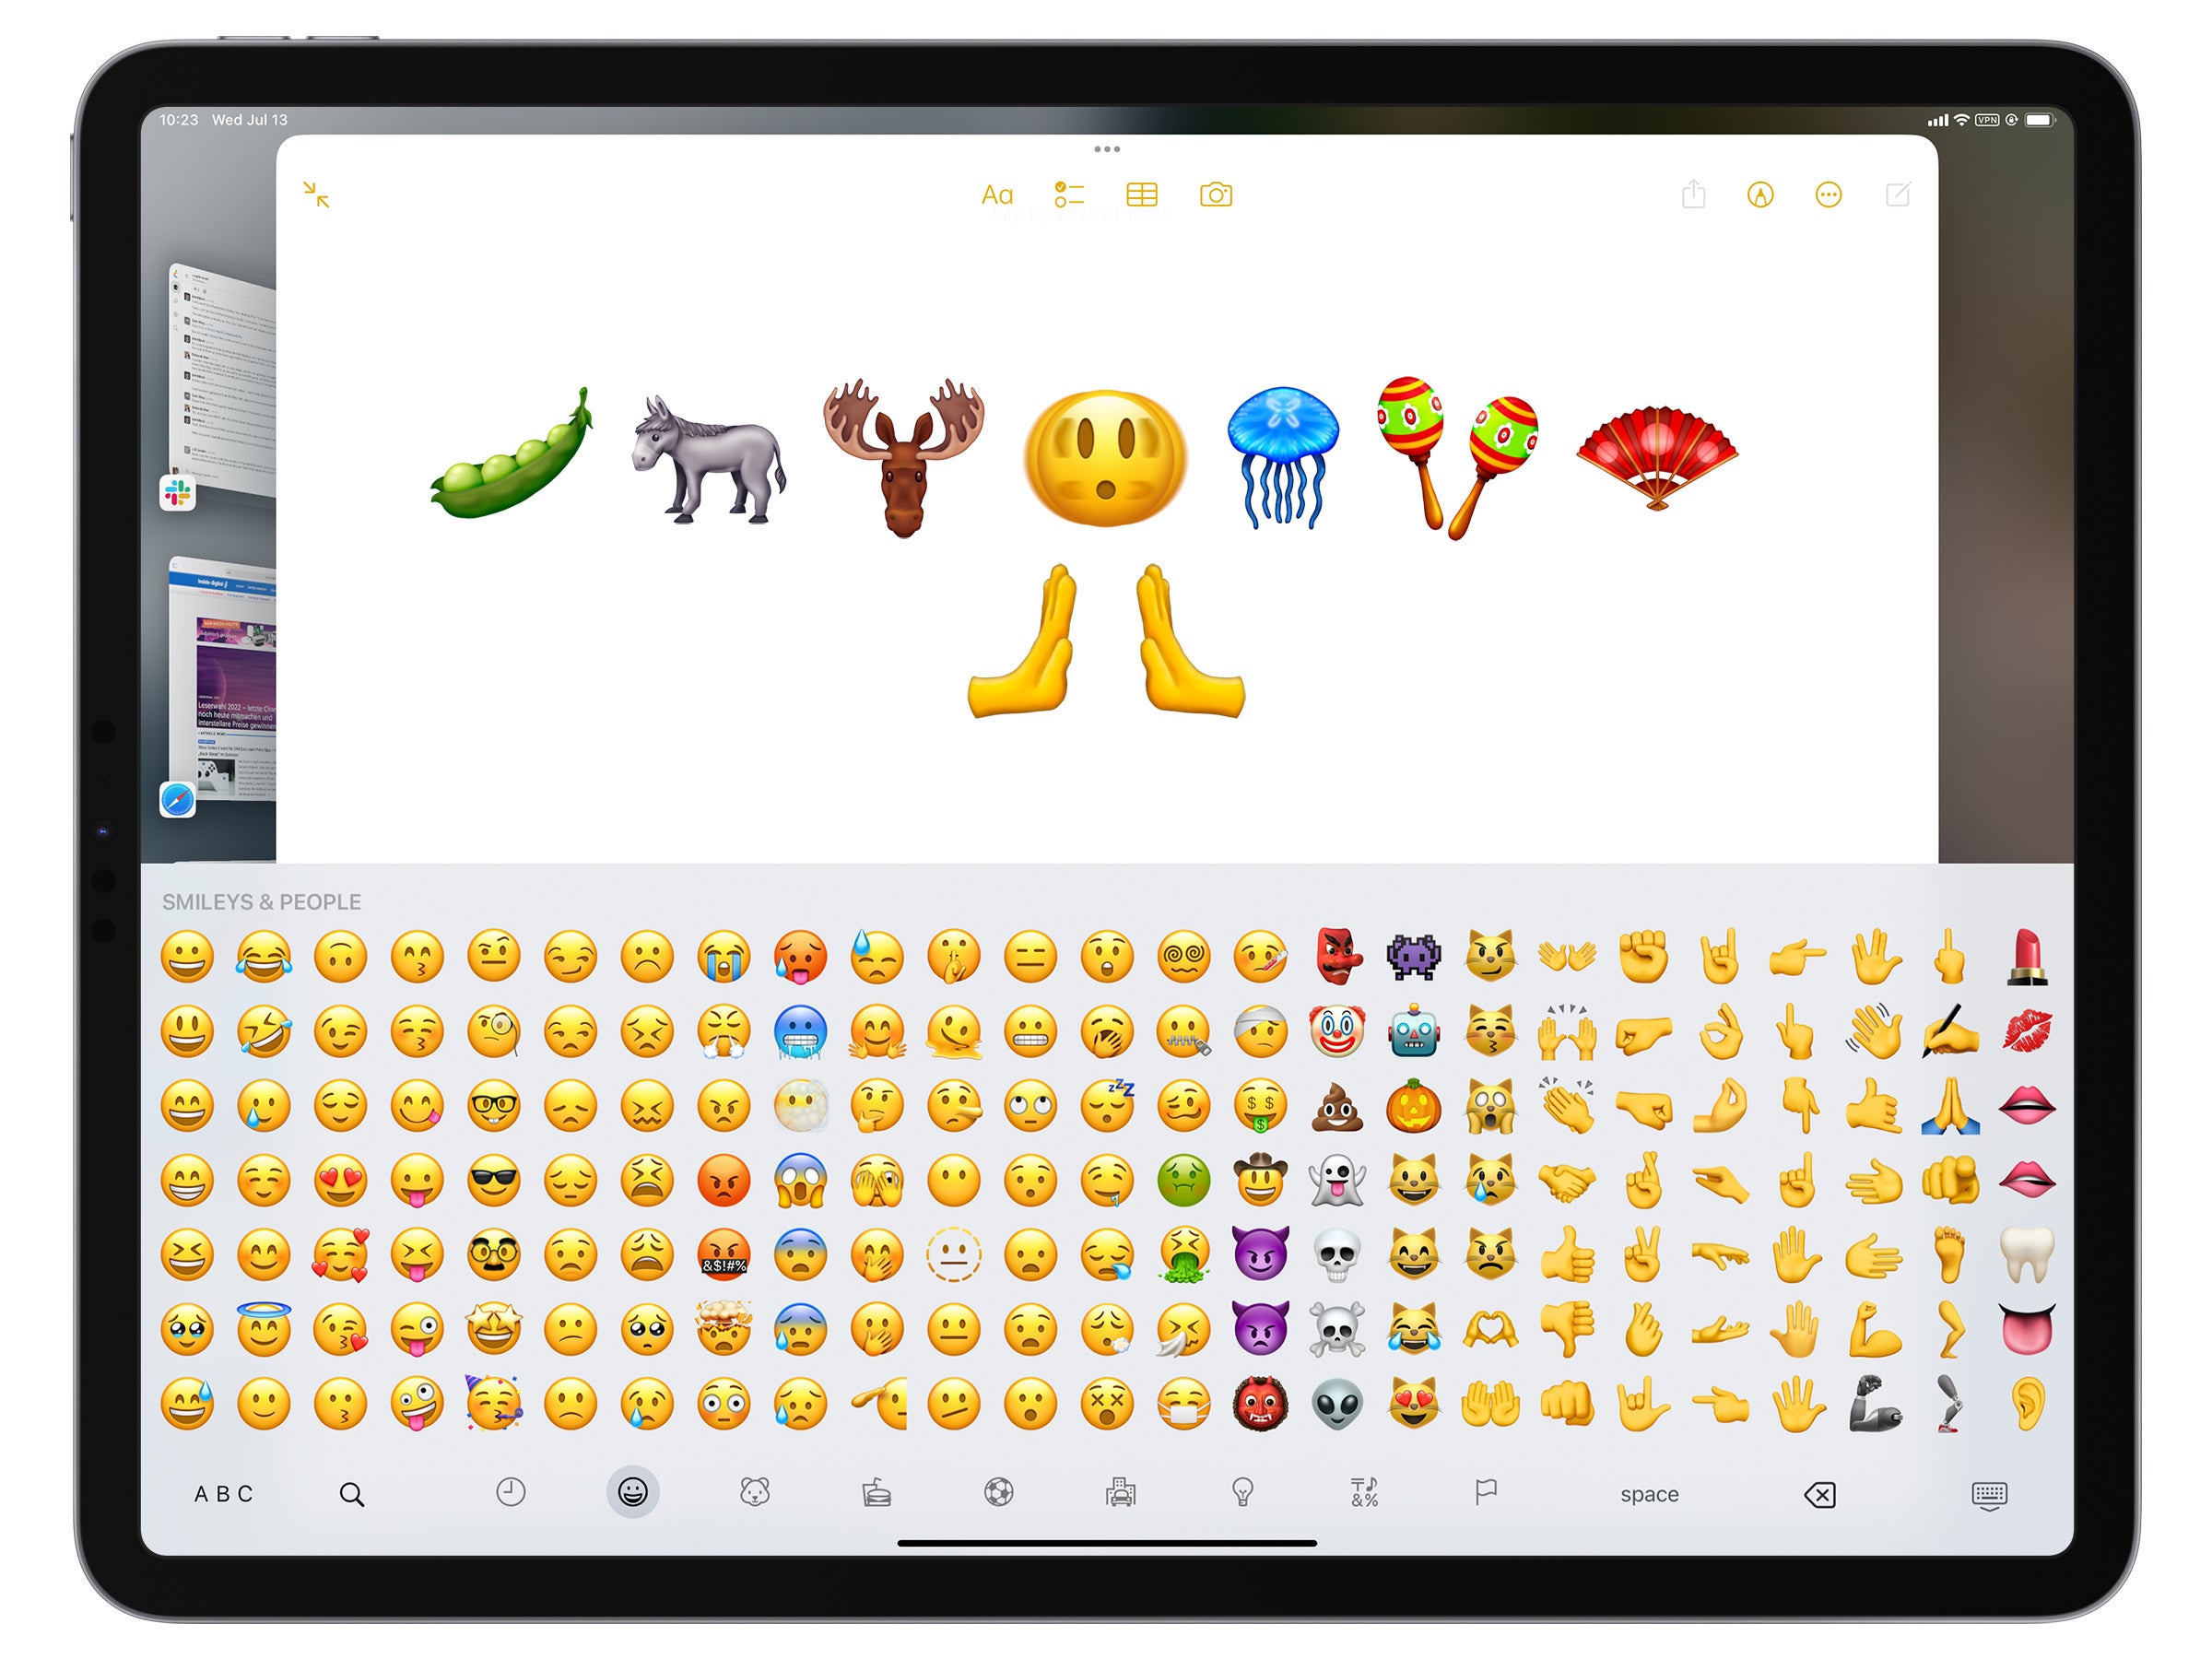 #Neue Emojis kommen: Darauf können sich iPhone- und Android-User freuen